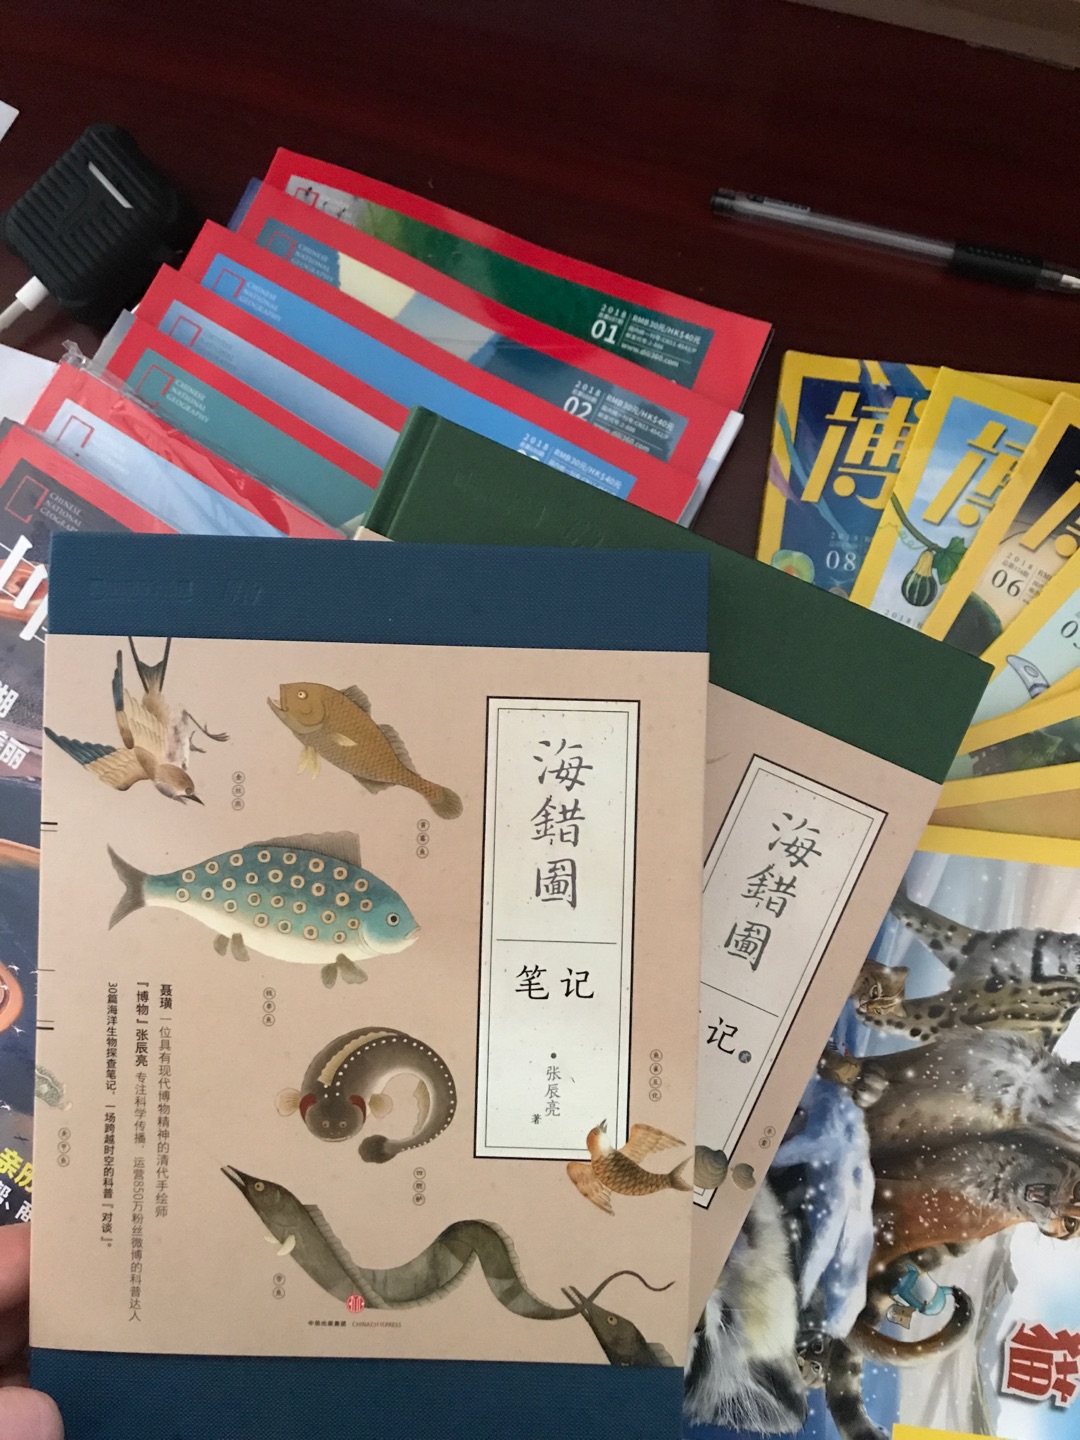 海错 是和博物配套买的 图文并茂的一本科普书籍。可以教孩子认识大自然。